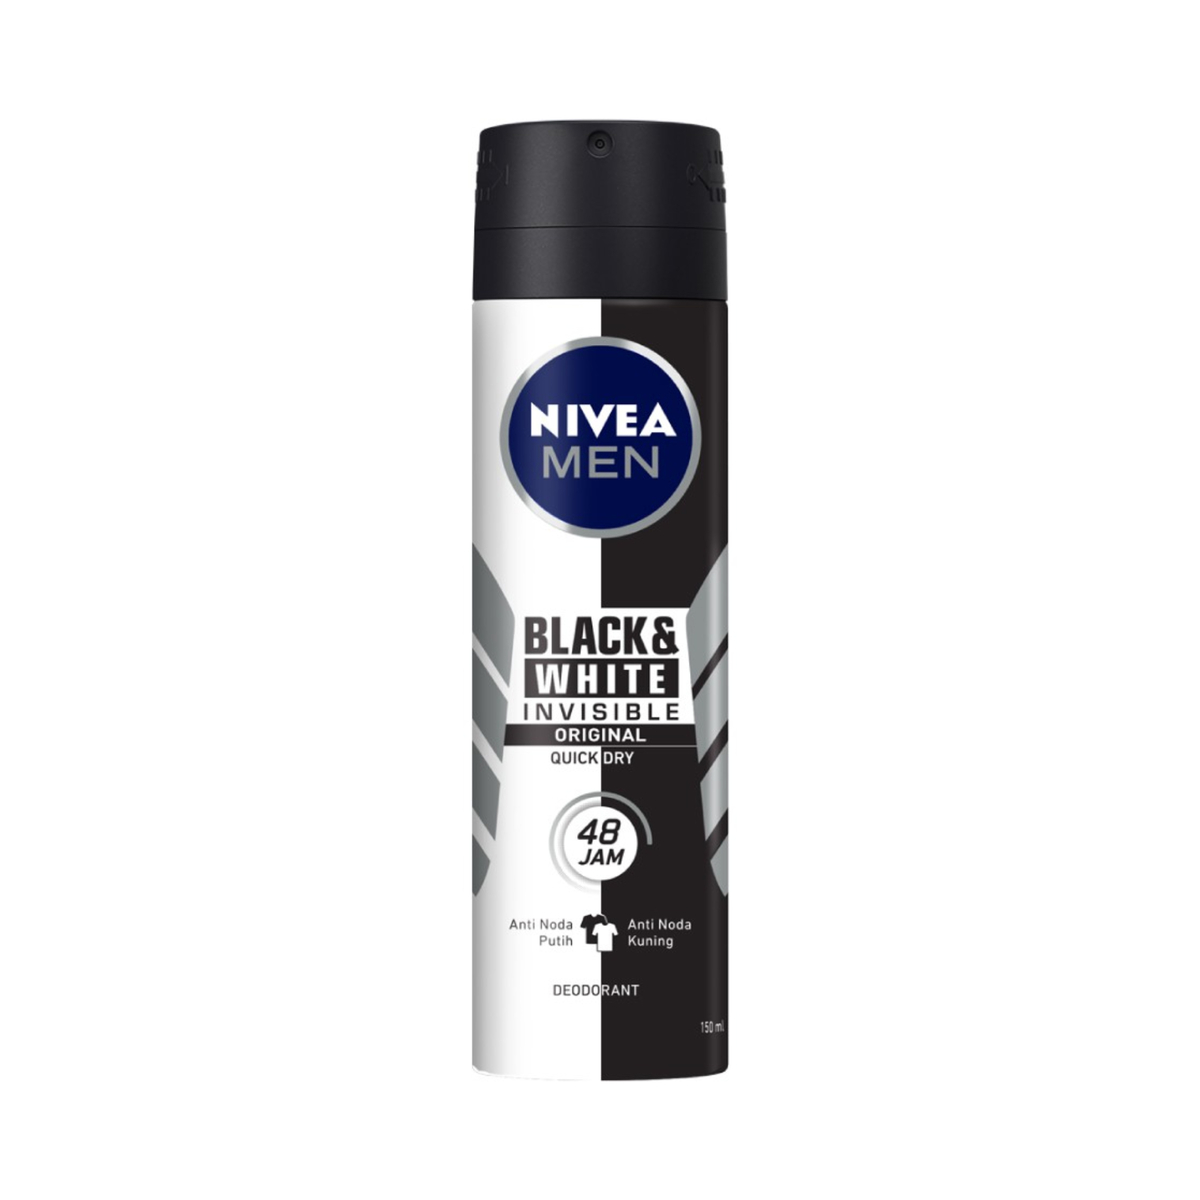 Nivea Deodorant Invisible Black & Whiite Spray Men 50ml